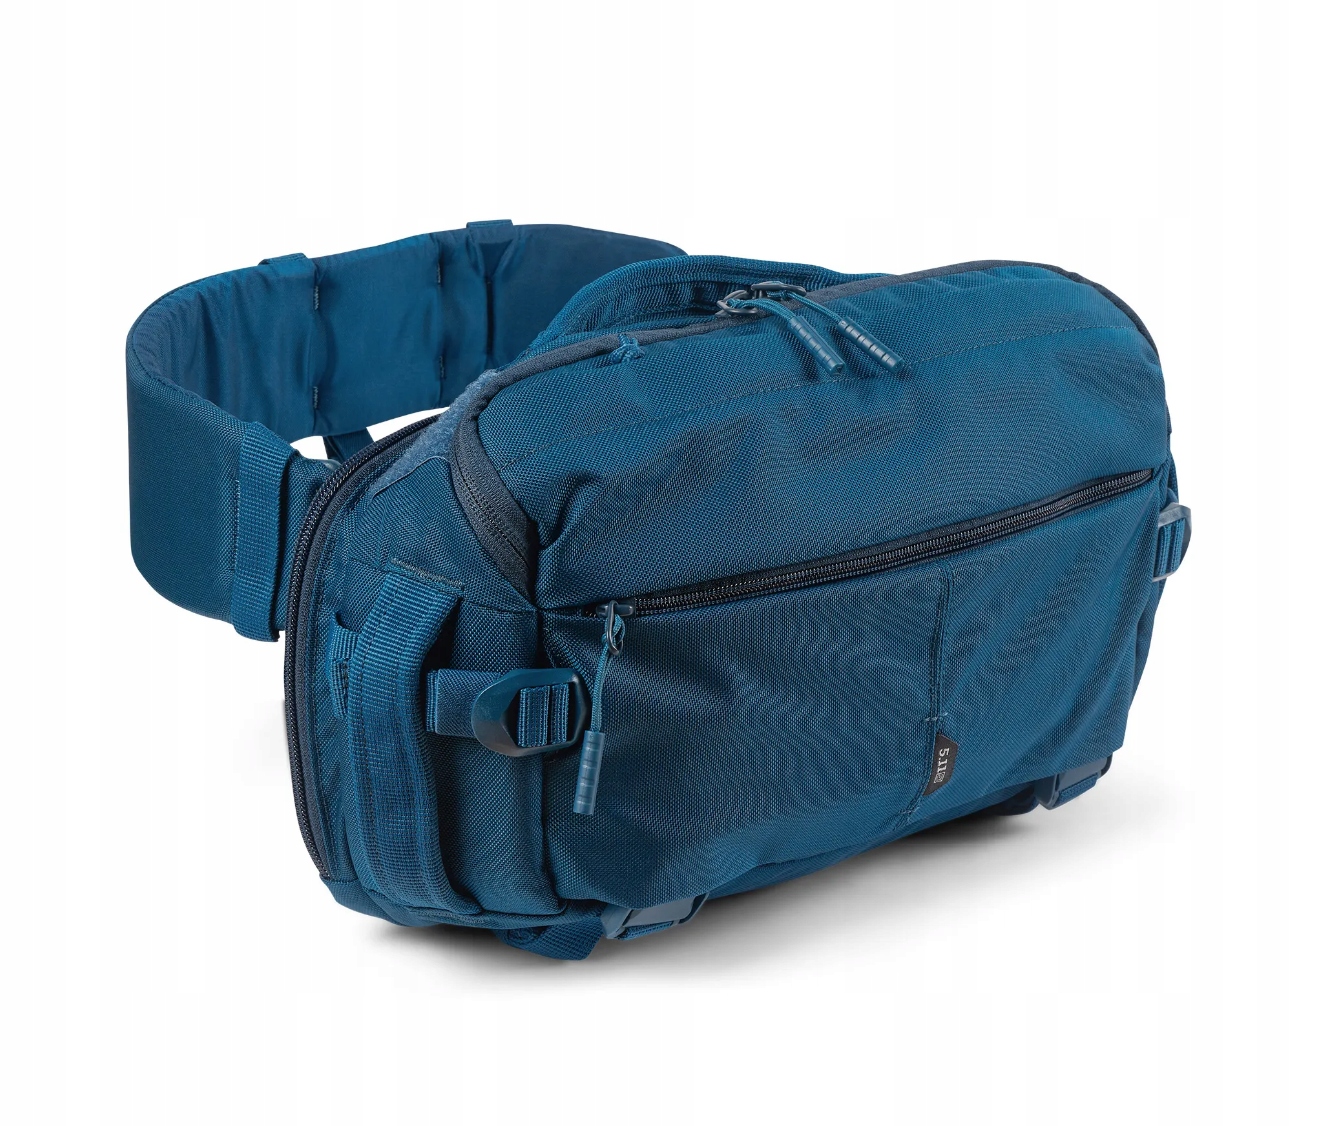 Plecak 5.11 LV8 SLING PACK kolor: BLUEBLOOD SKLEP WAWA - 14451129151 